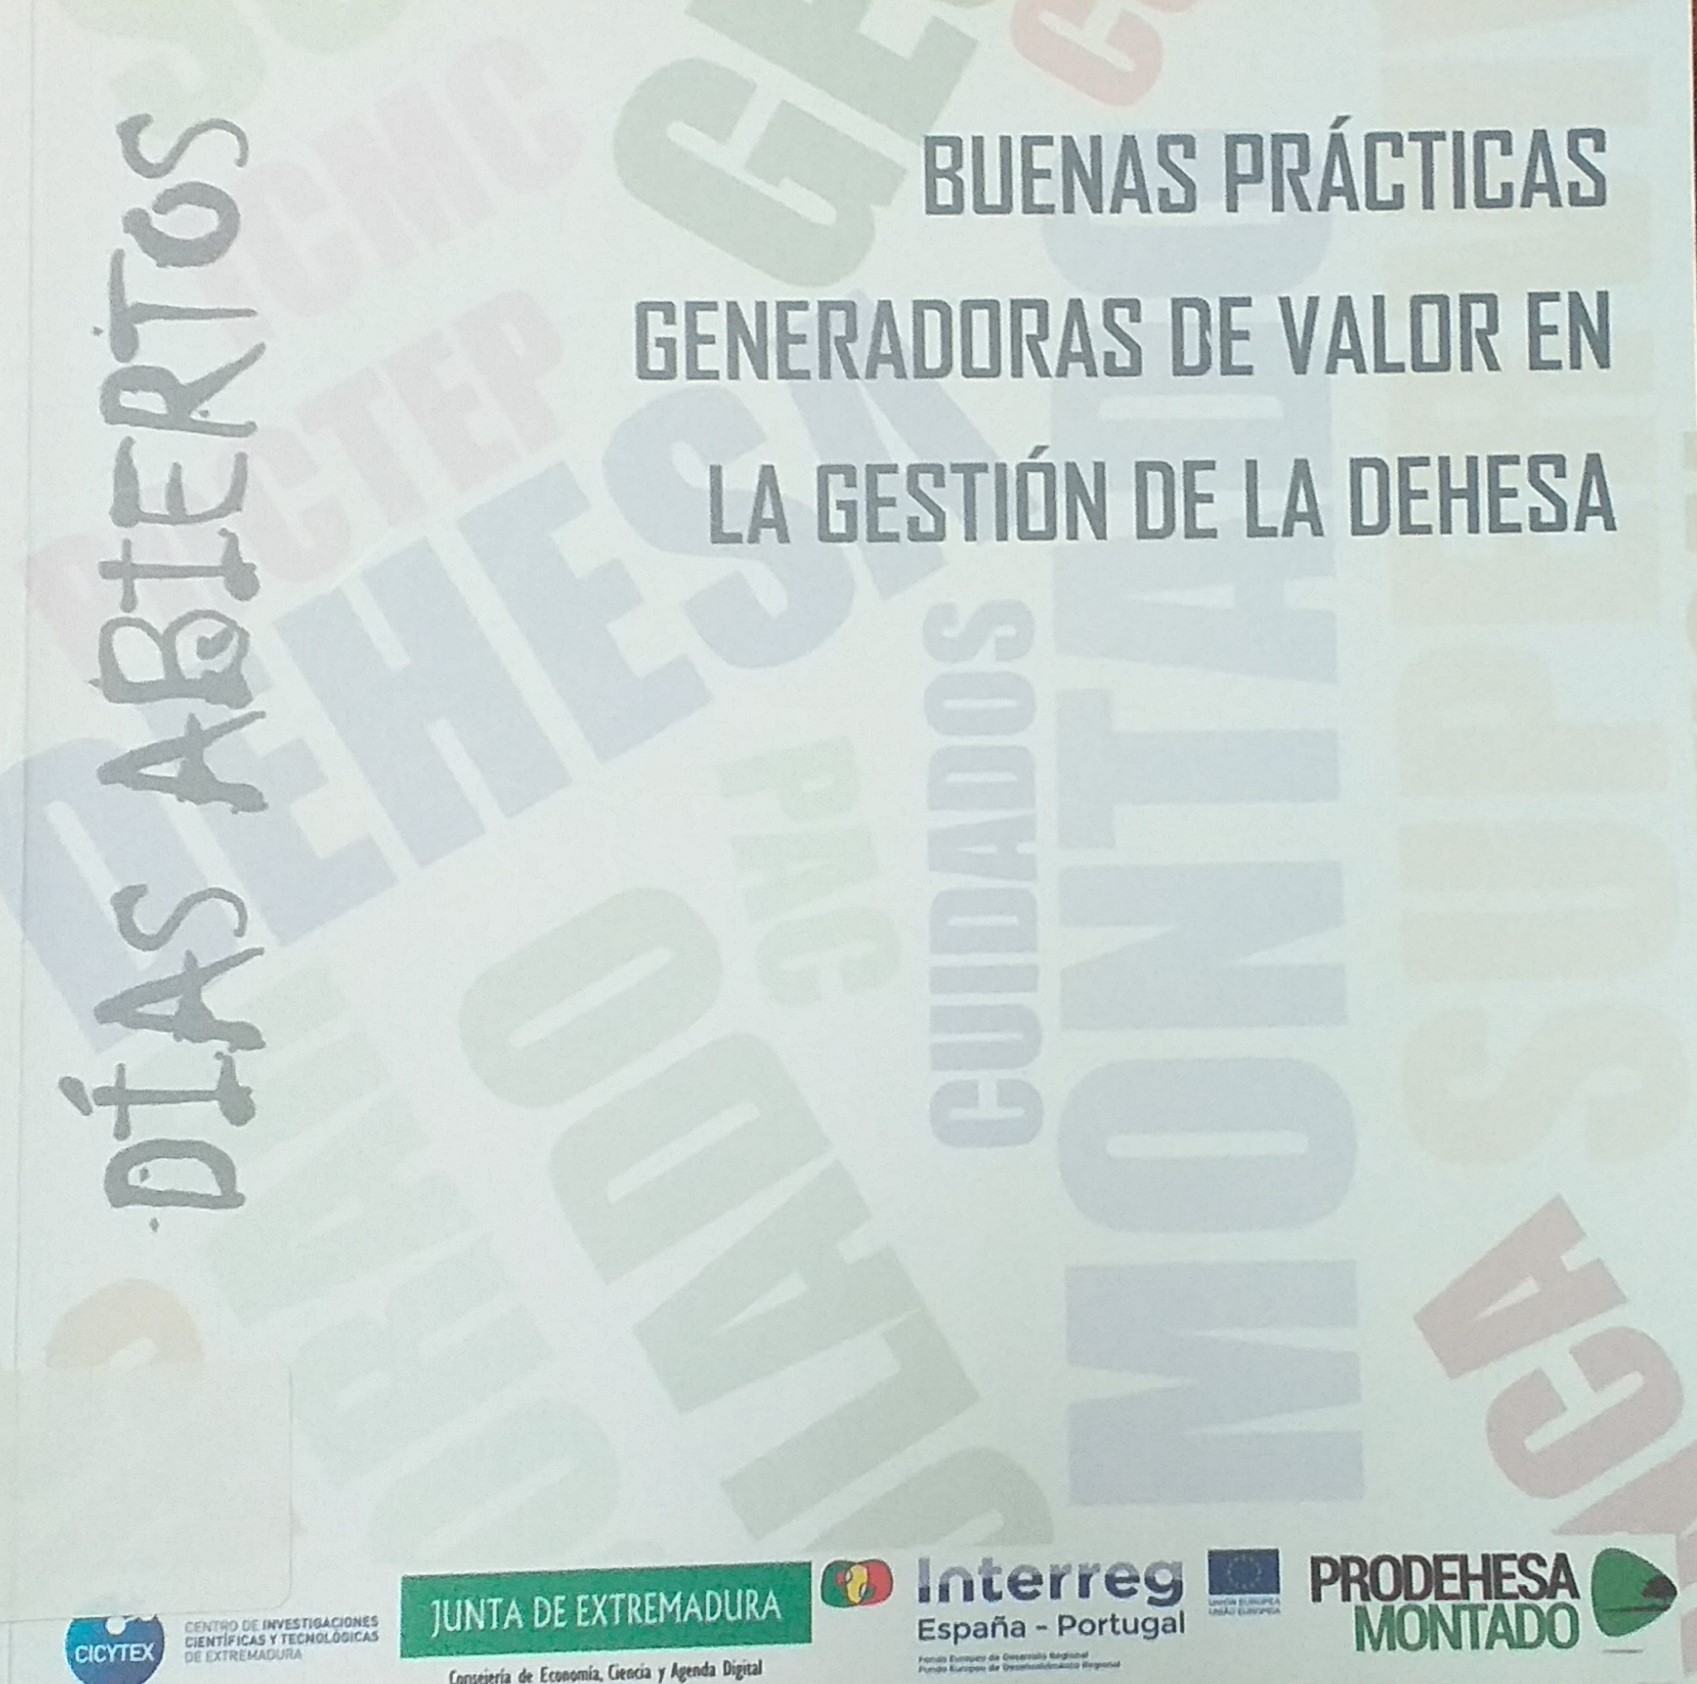 Imagen de portada del libro Buenas prácticas generadoras de valor en la gestión de la dehesa